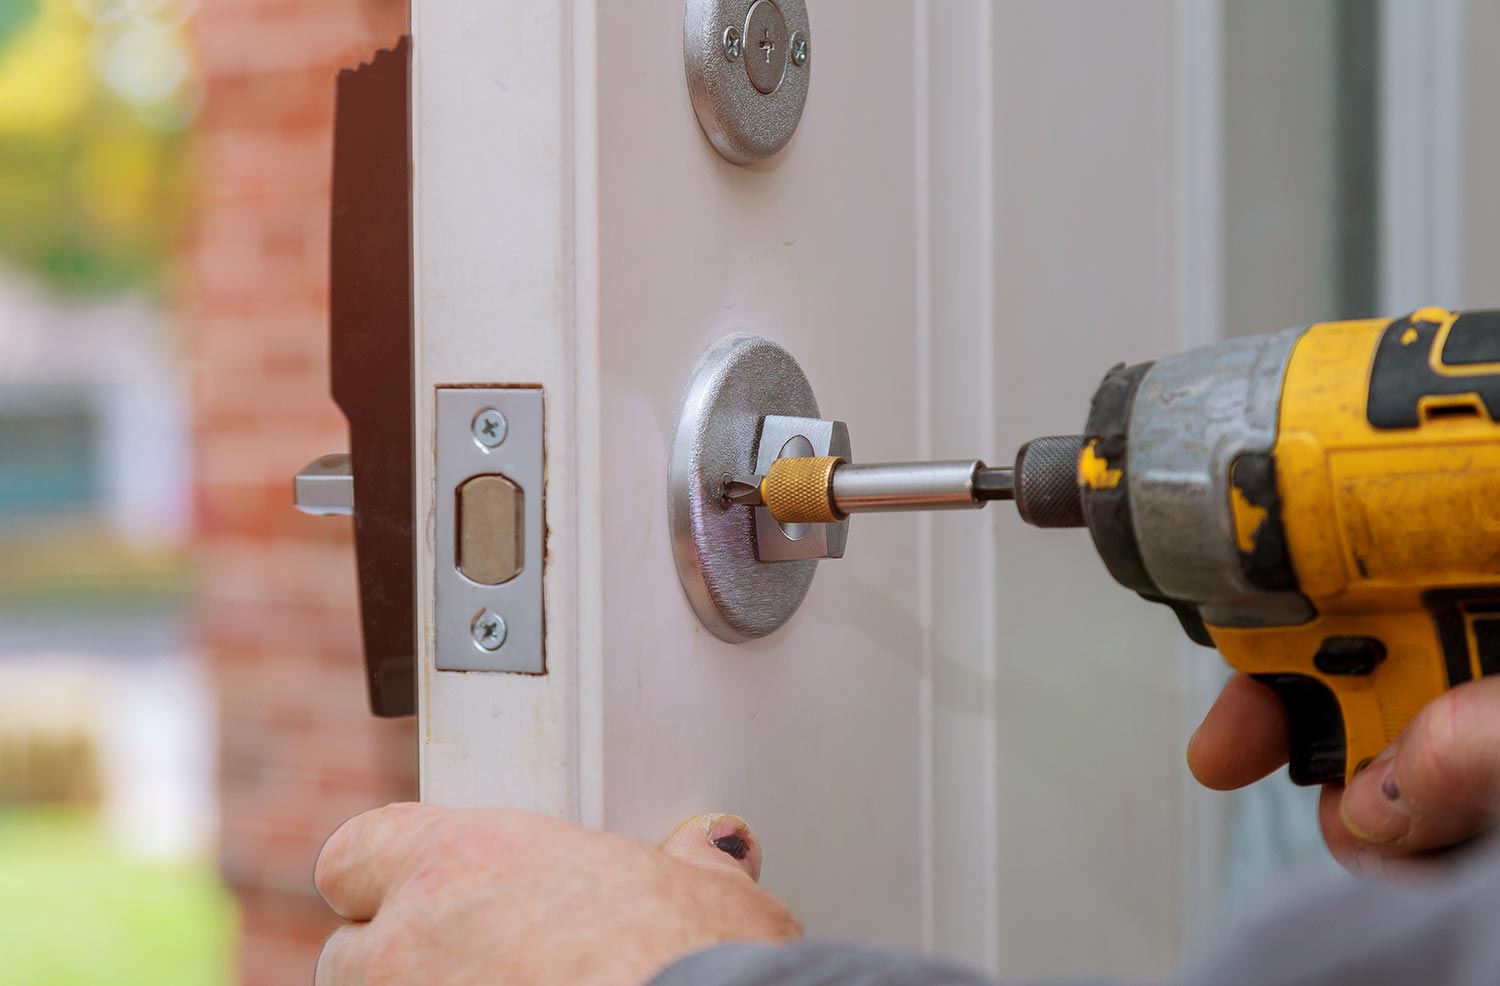 Handyman repair the door lock in worker's hands installing new door locker